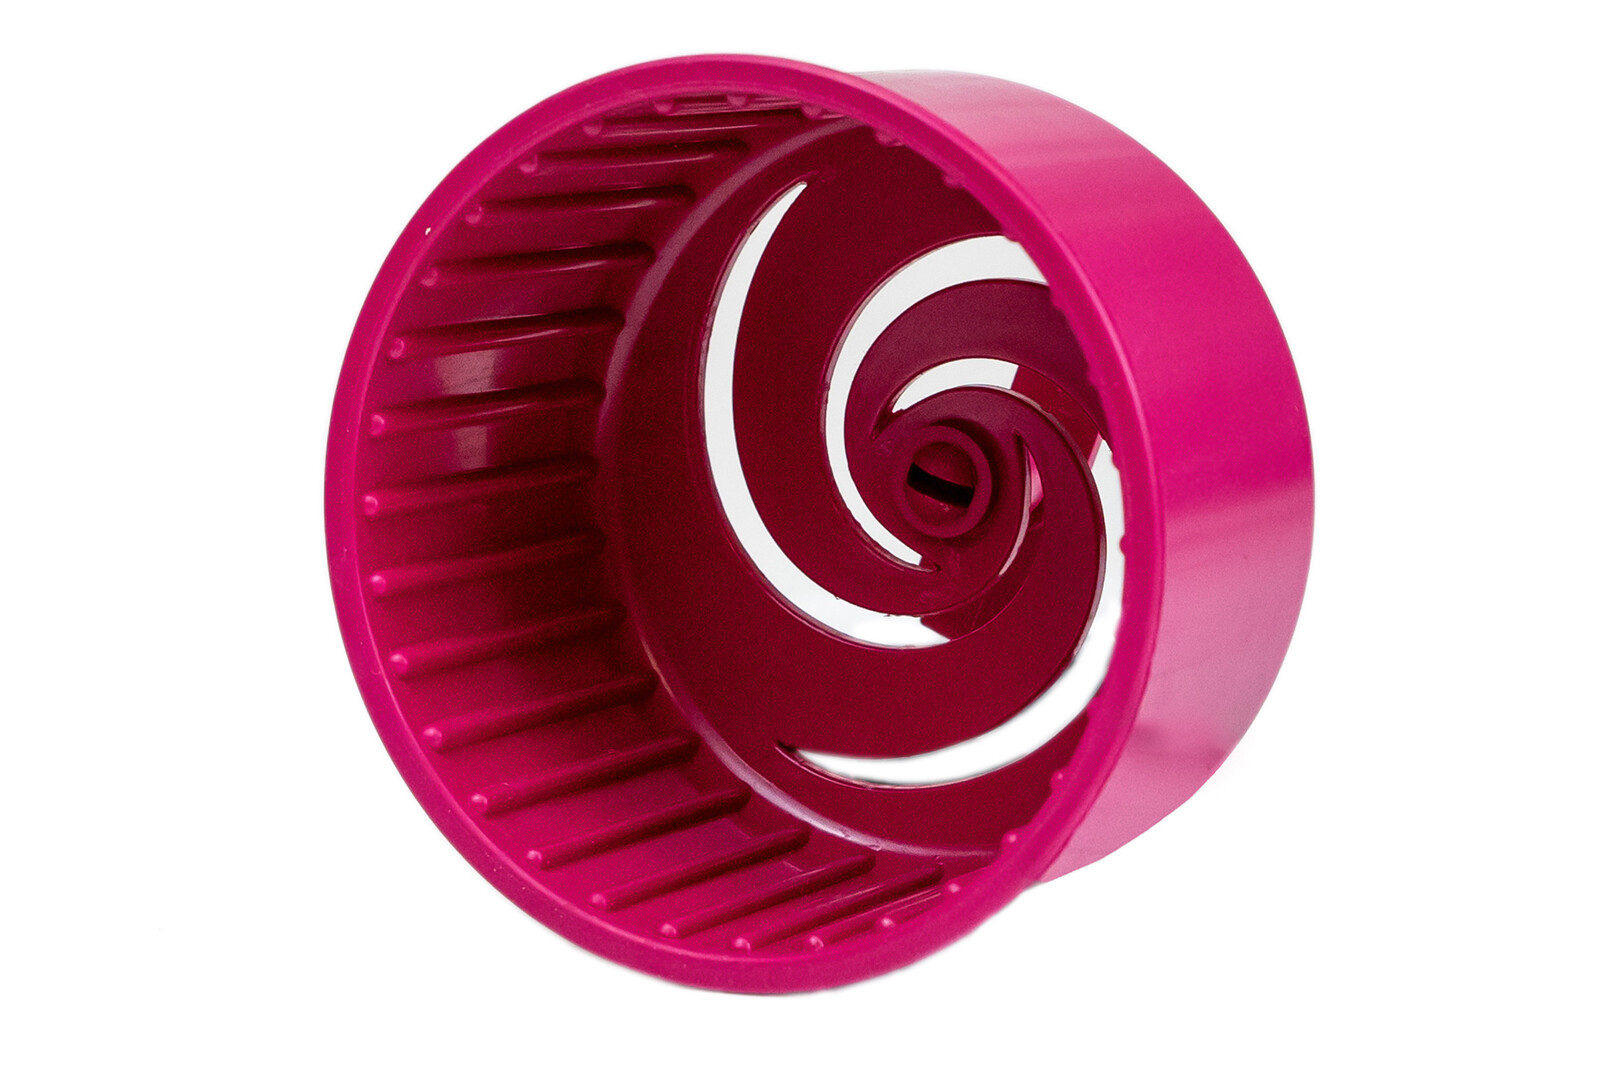 Беговое колесо для грызунов ZooM HYPNO литое без подставки D90 (полистирол) рубиновое